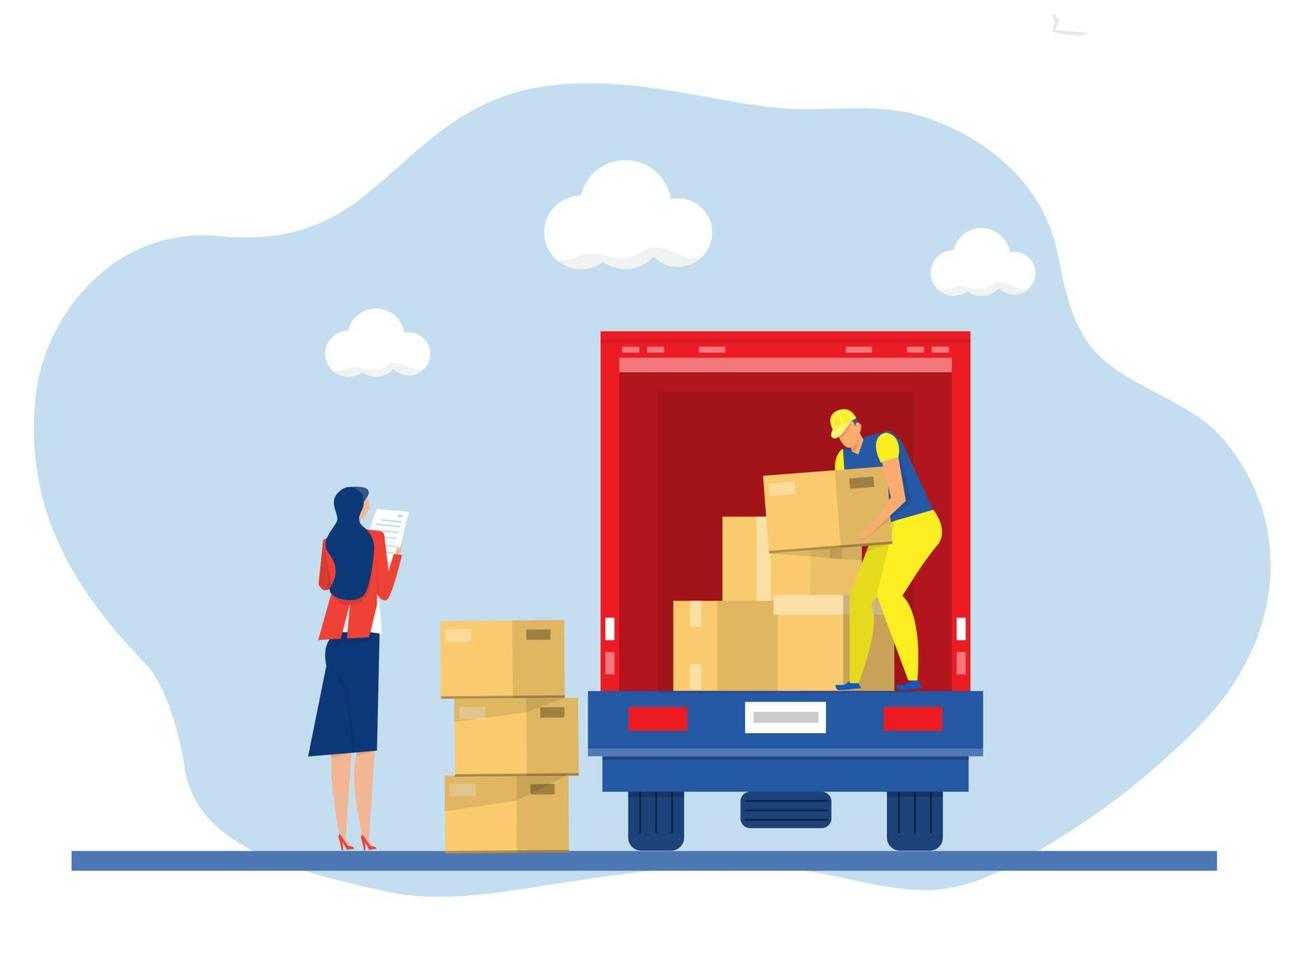 trasporto di affari, camion di carico della scatola di scarico del caricatore di consegna, trasporto logistico delle forniture, illustrazione di vettore del fumetto